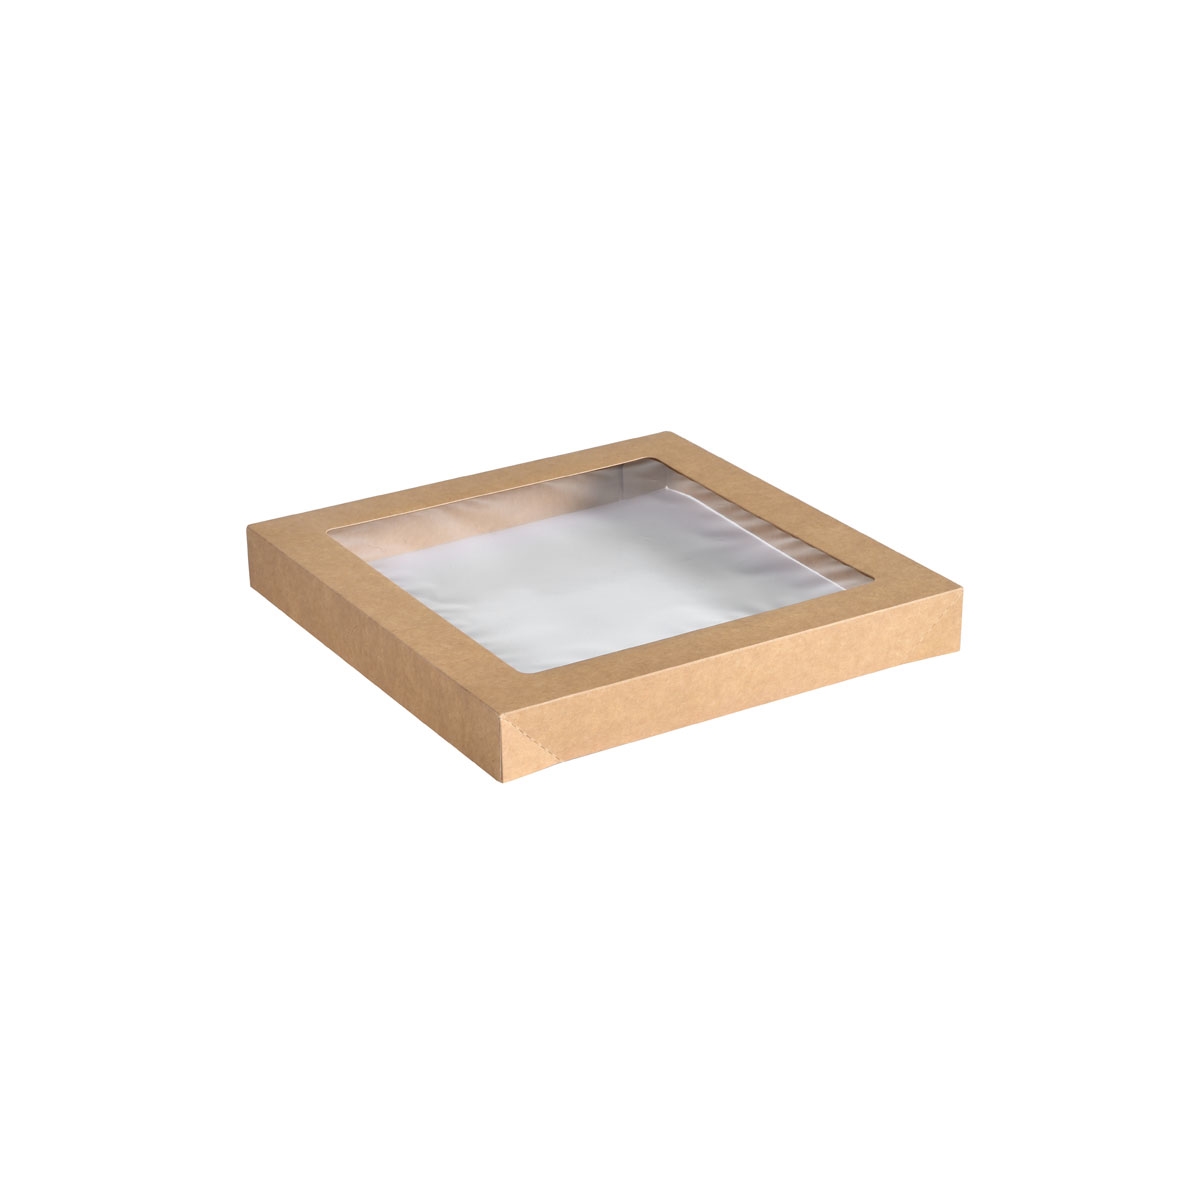 Catering-Deckel Cardboard / PLA braun, Small braun